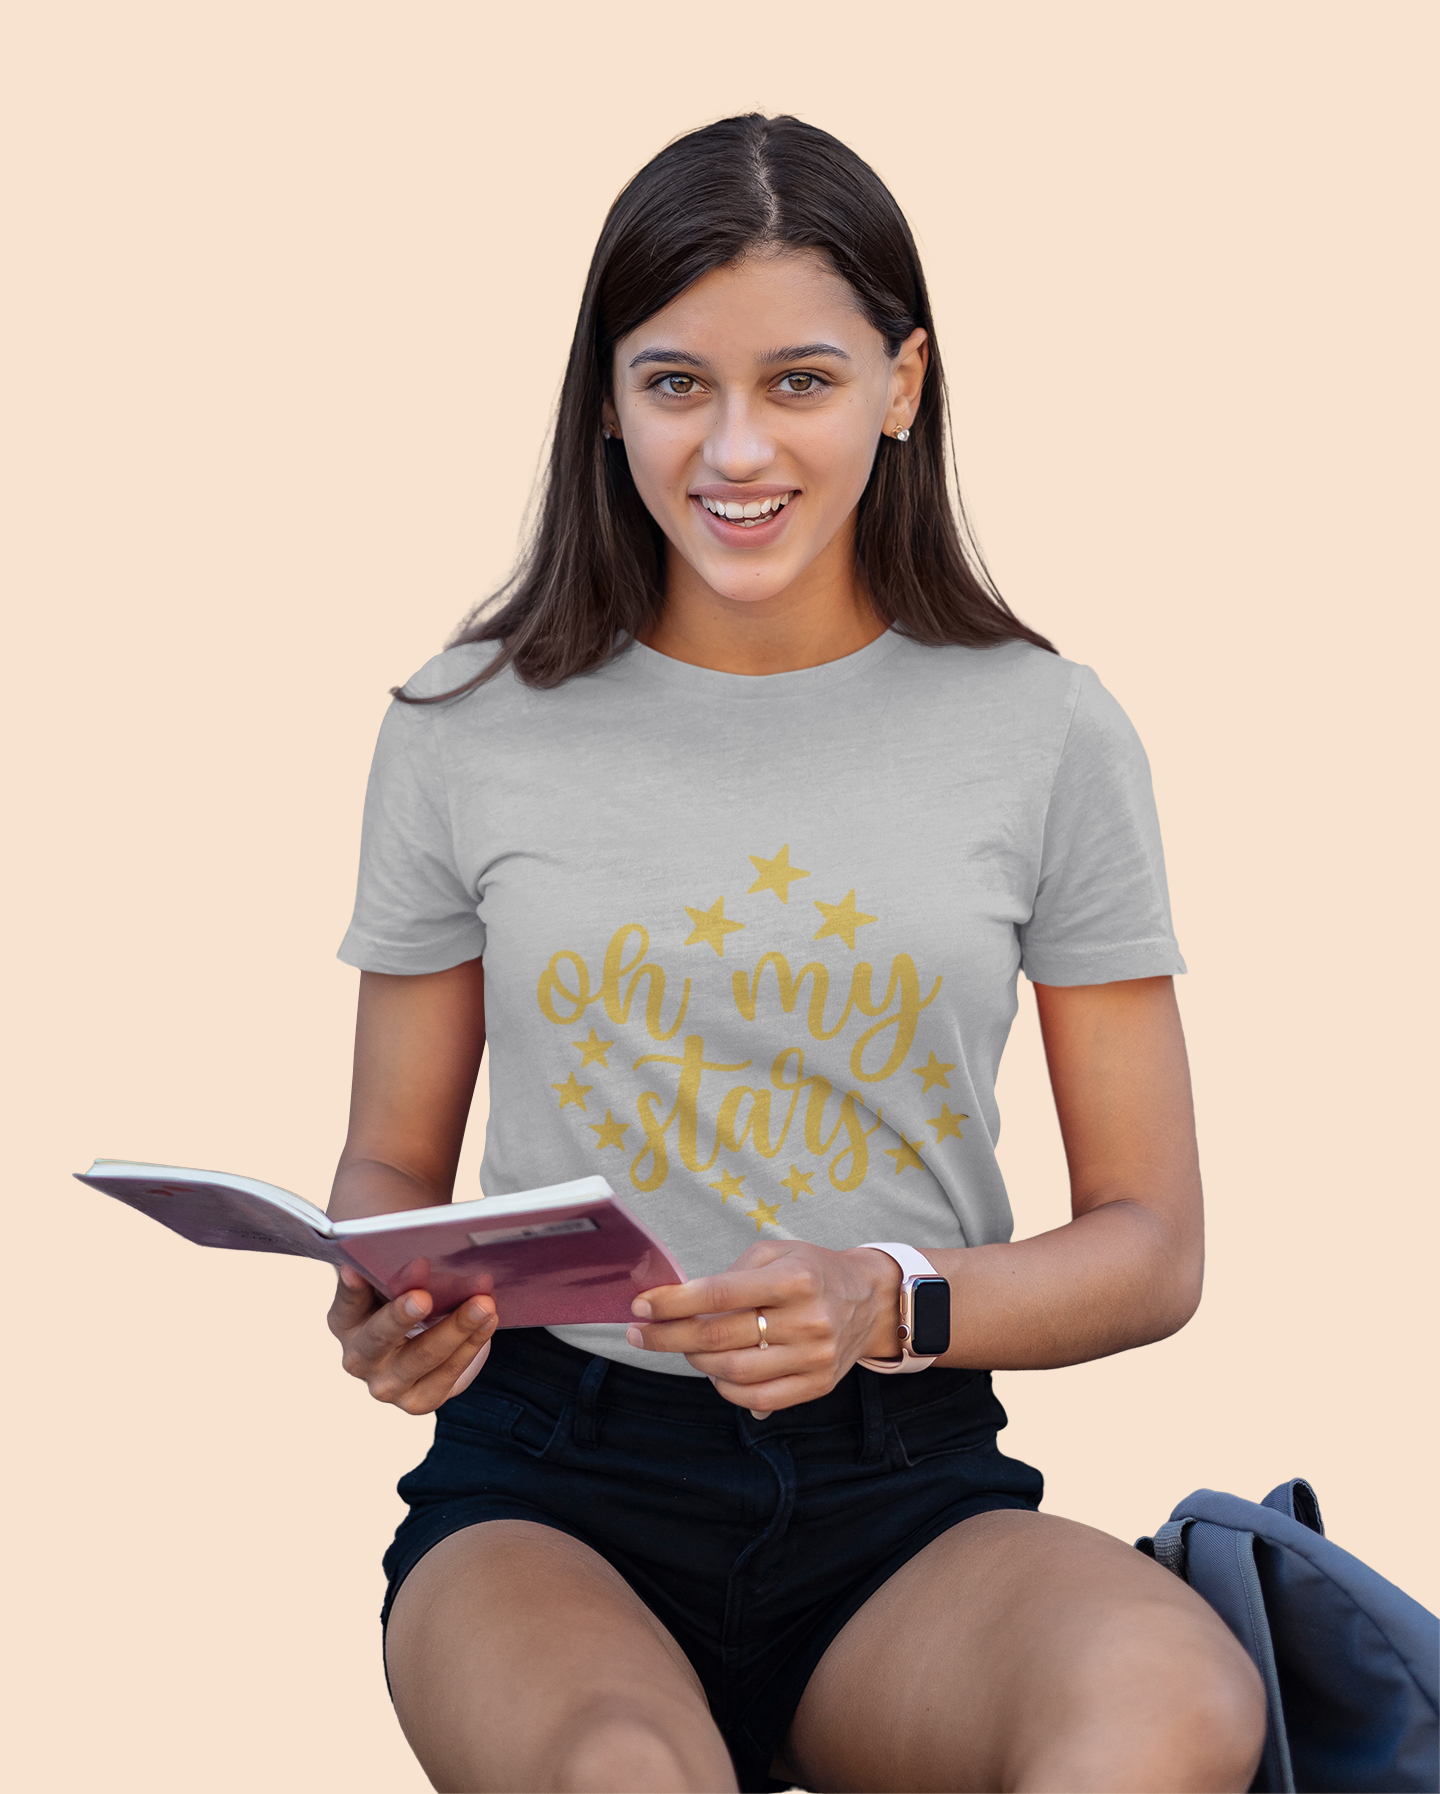 Oh my Stars- Aurora Academy- t-shirt - Caroline Peckham and Susanne Valenti Merchandise